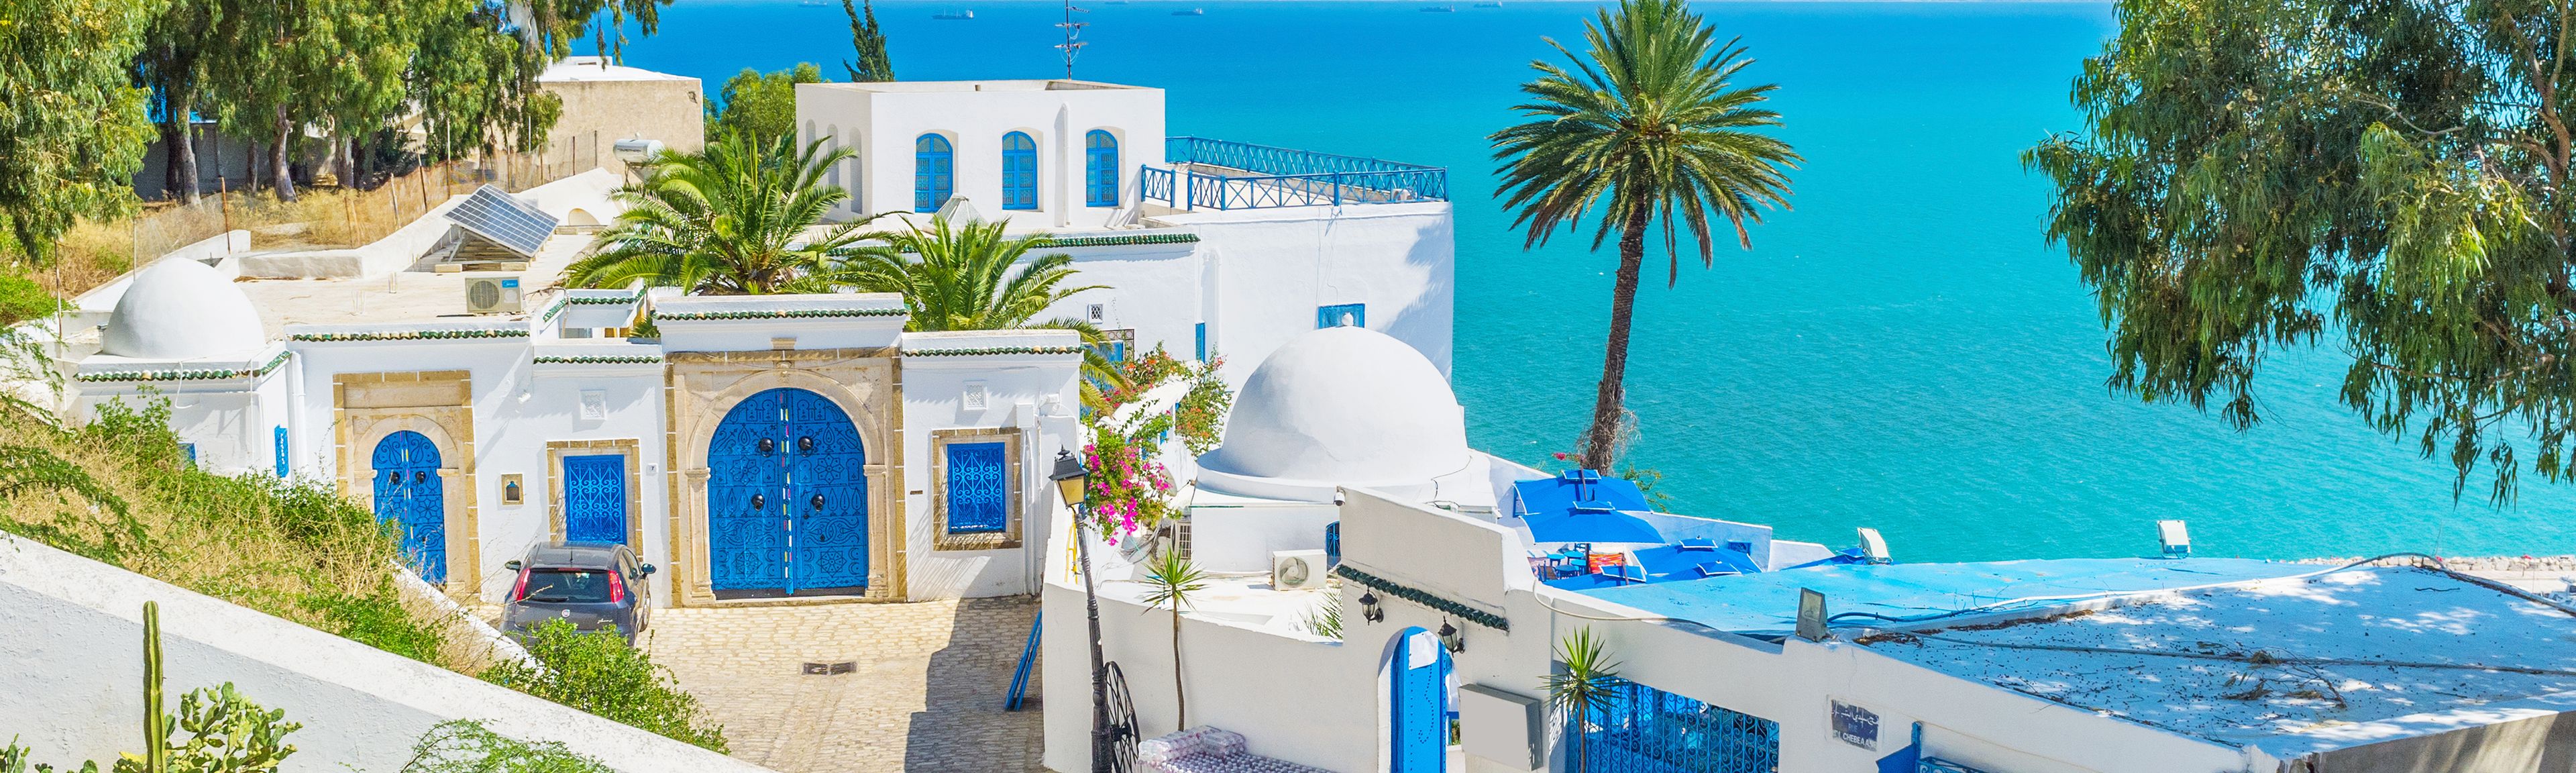 Kleine Häuser in Tunesien mit dem Meer im Hintergrund